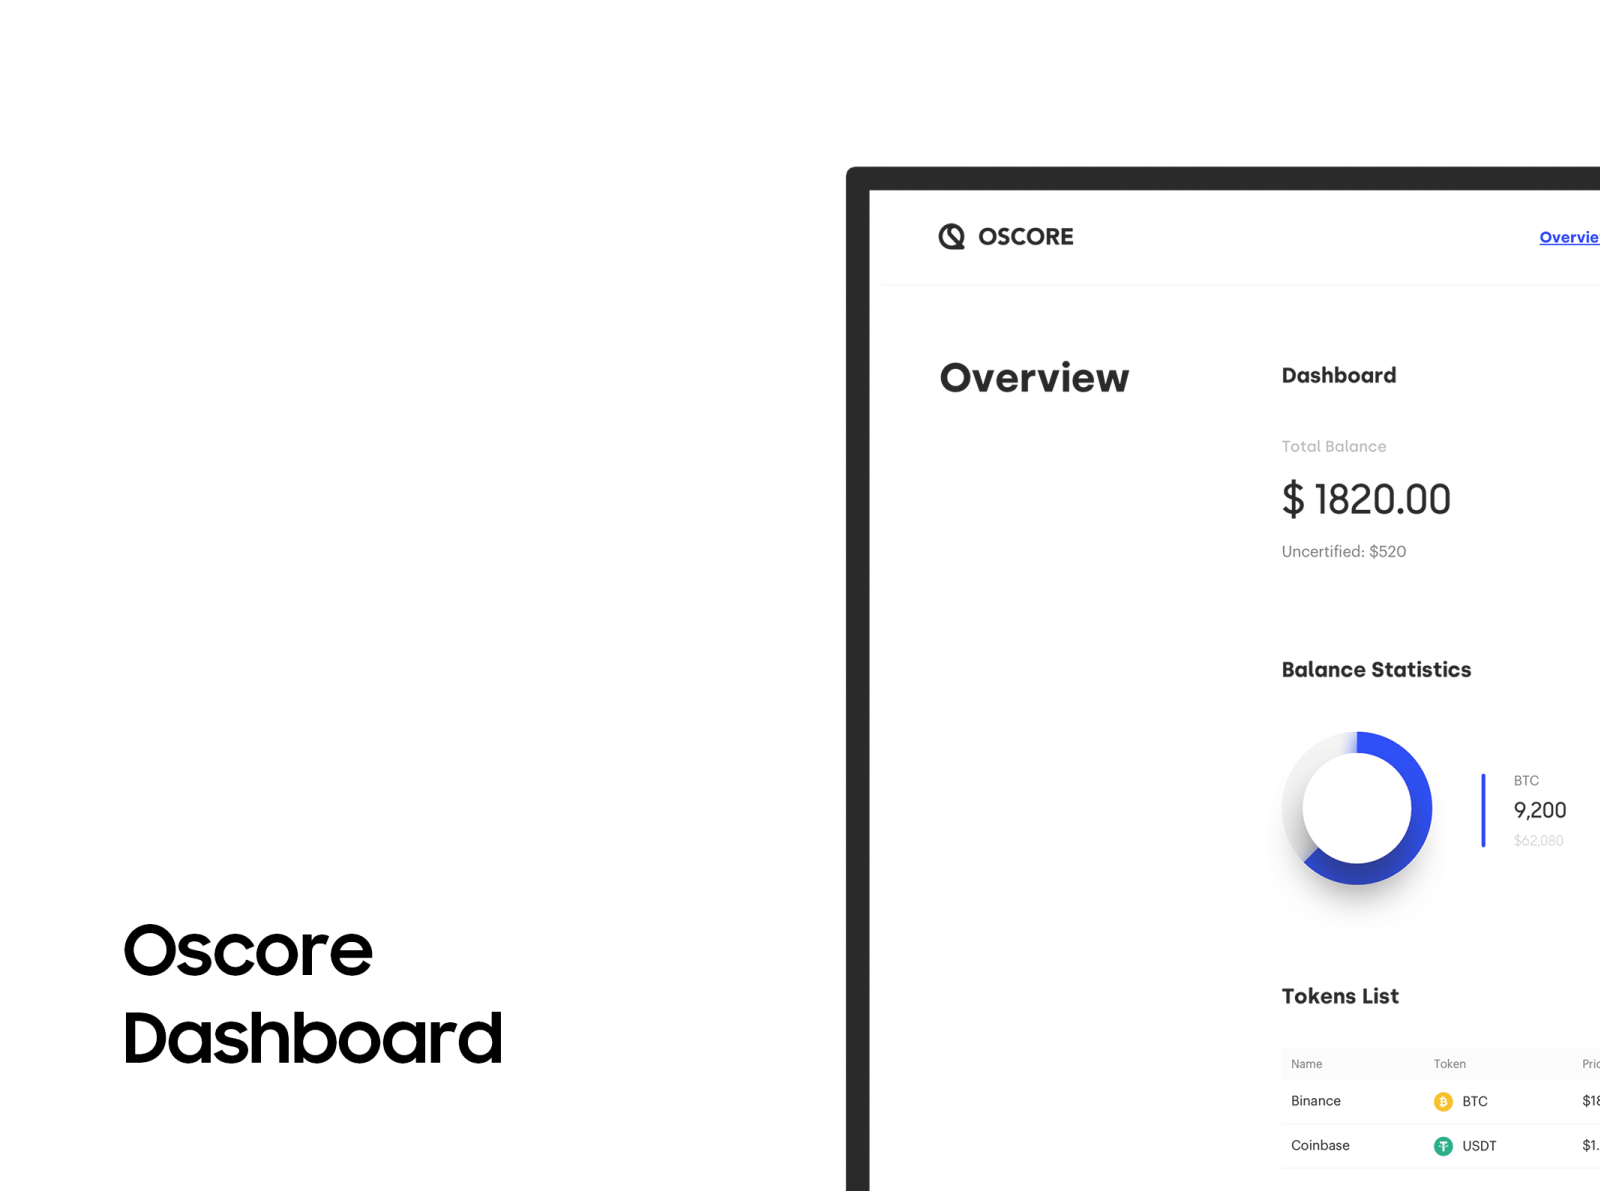 OScore Platform Overview / Dashboard